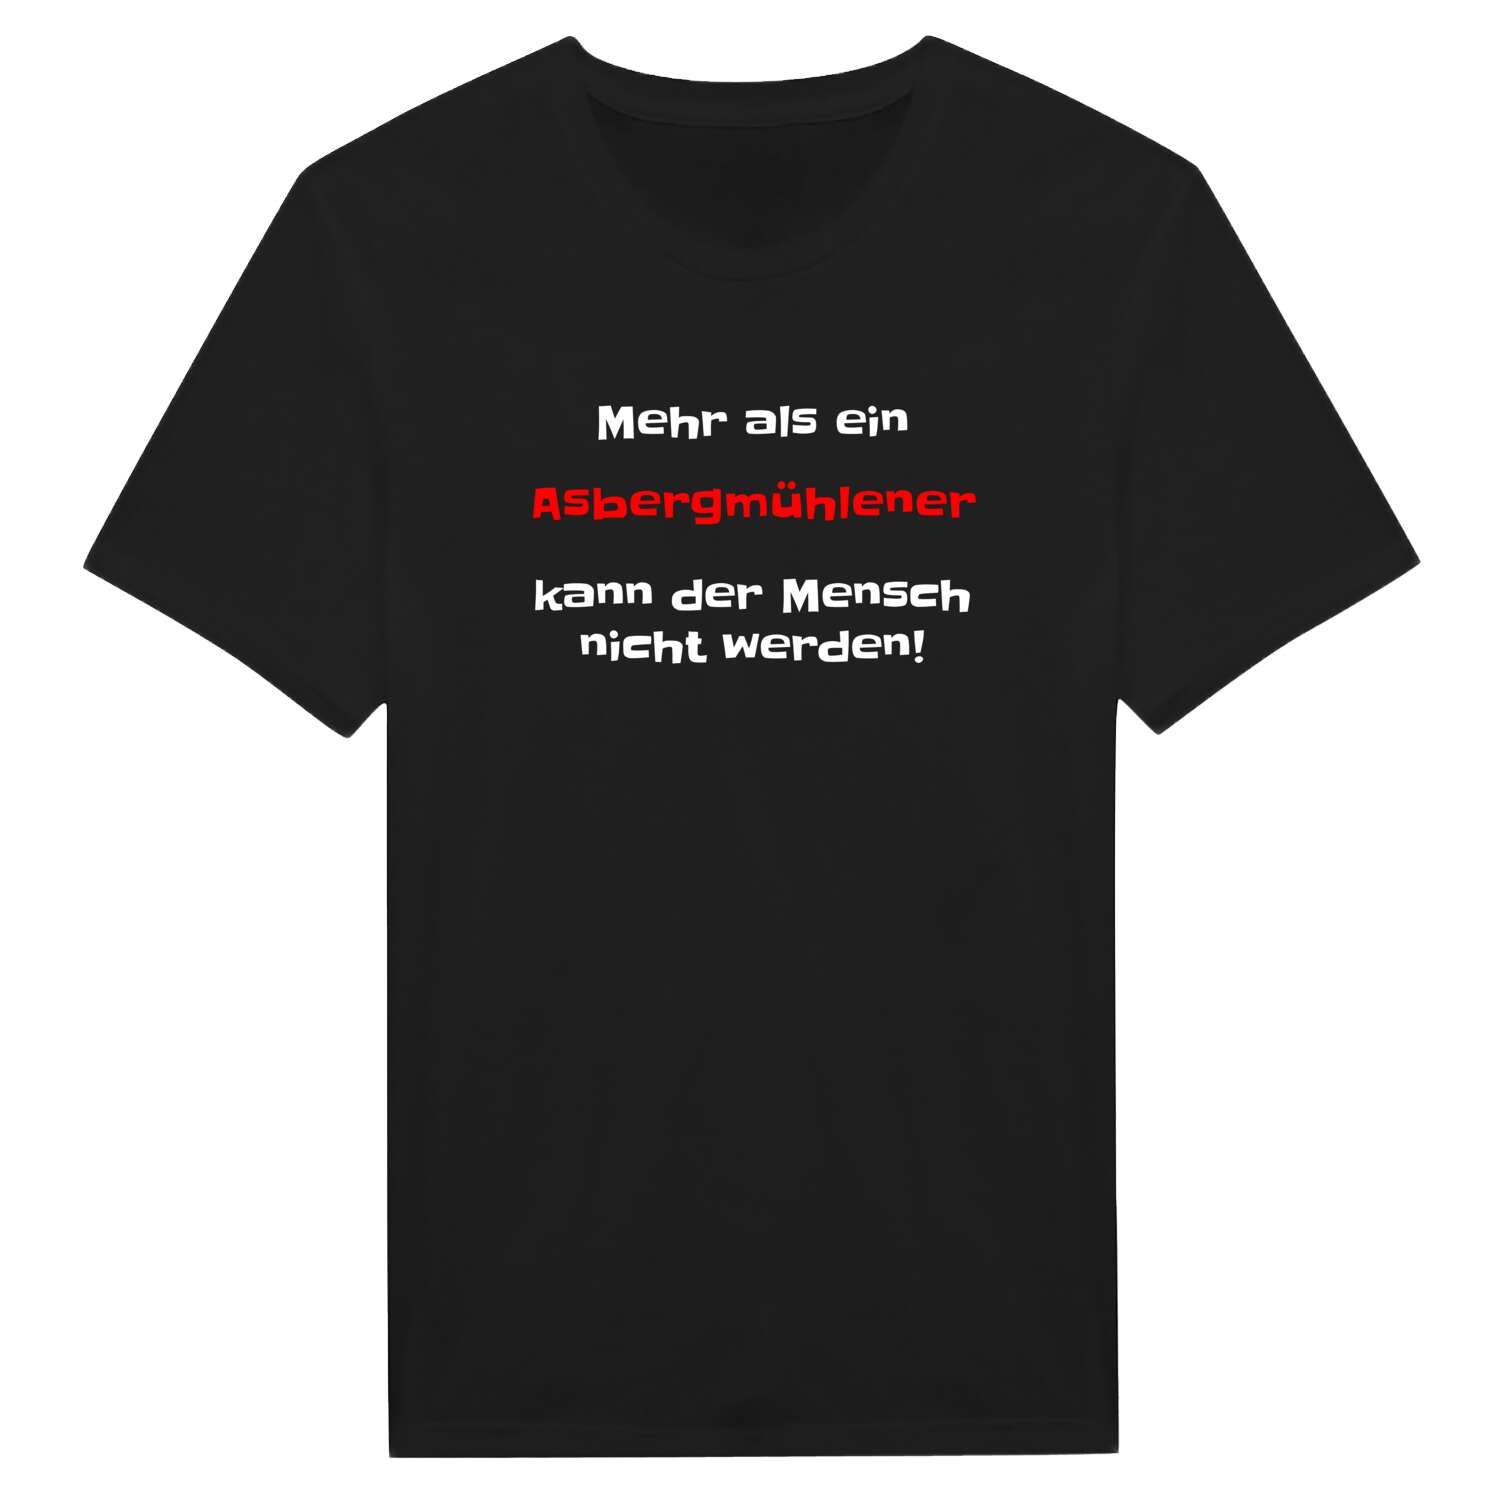 Asbergmühle T-Shirt »Mehr als ein«